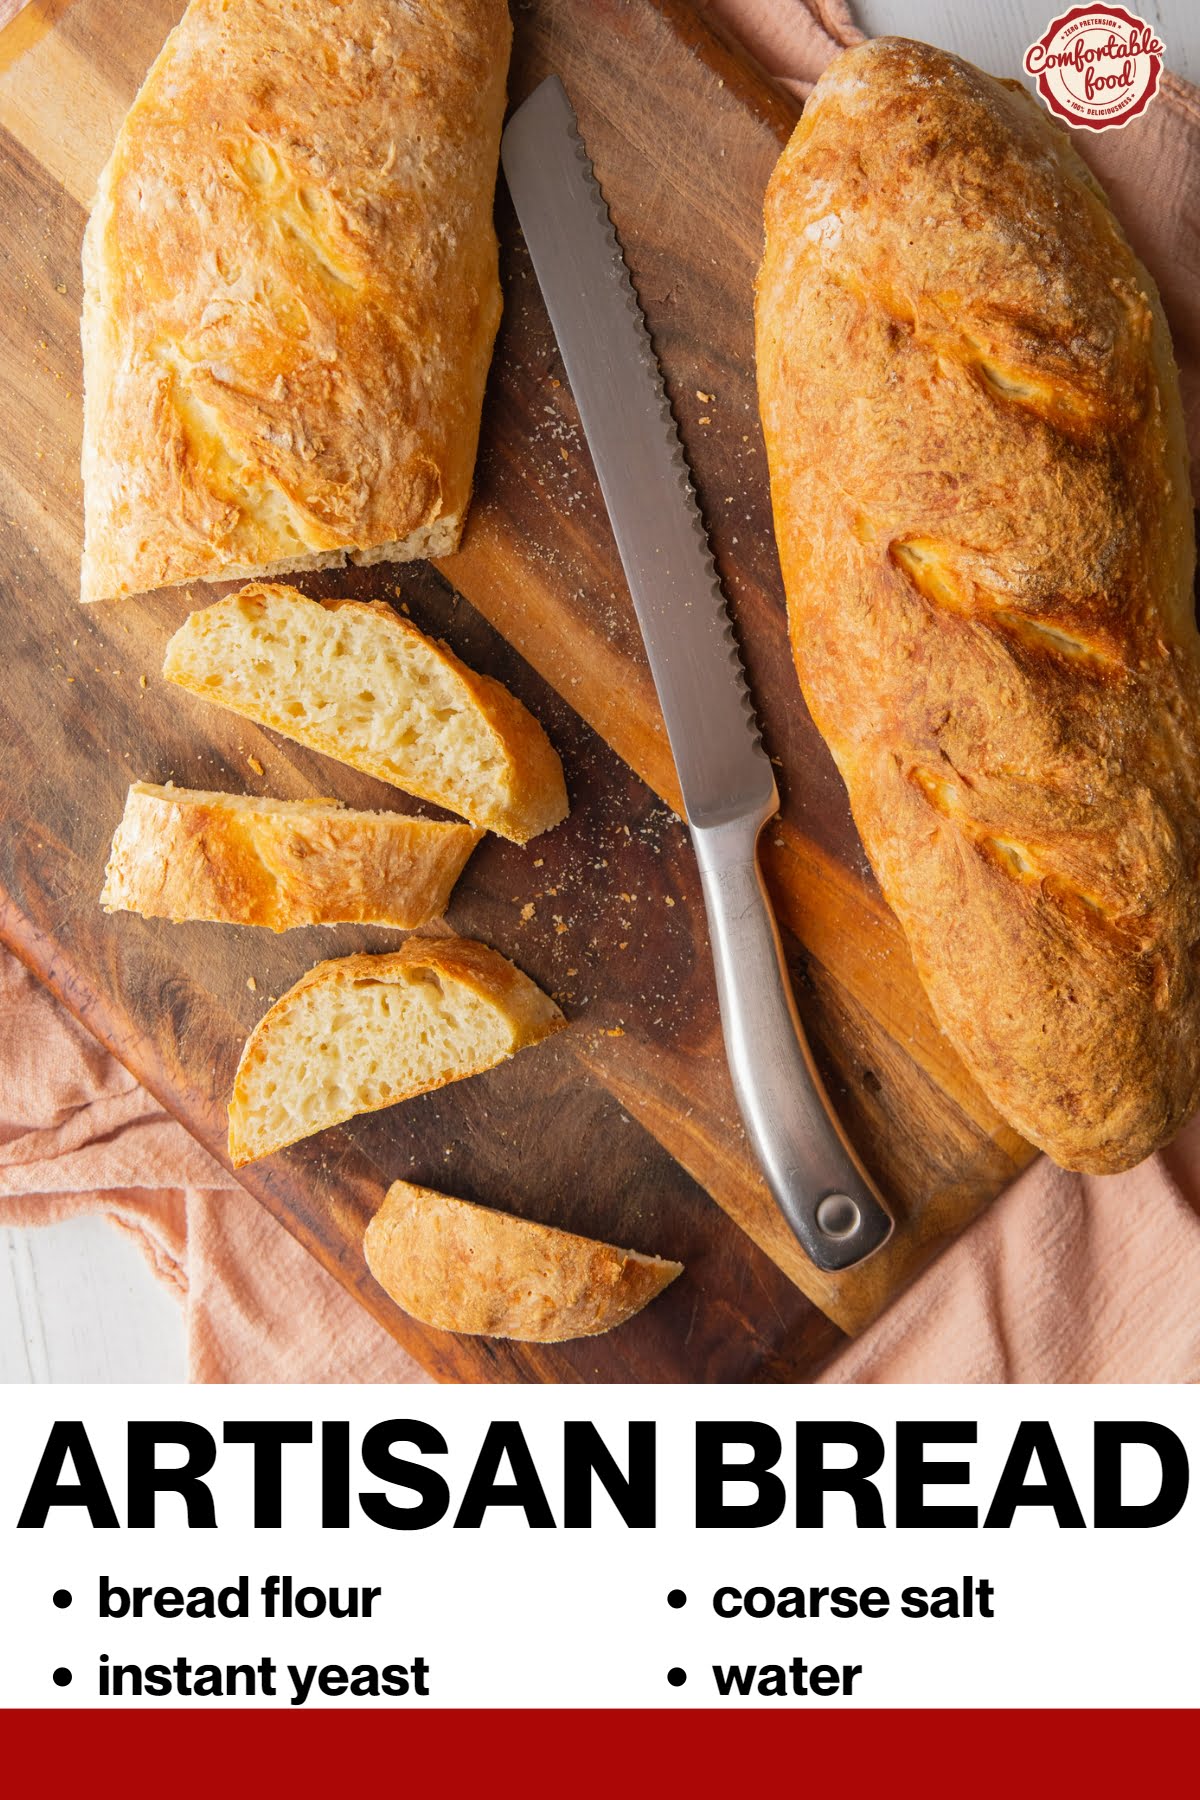 Artisan bread - socials